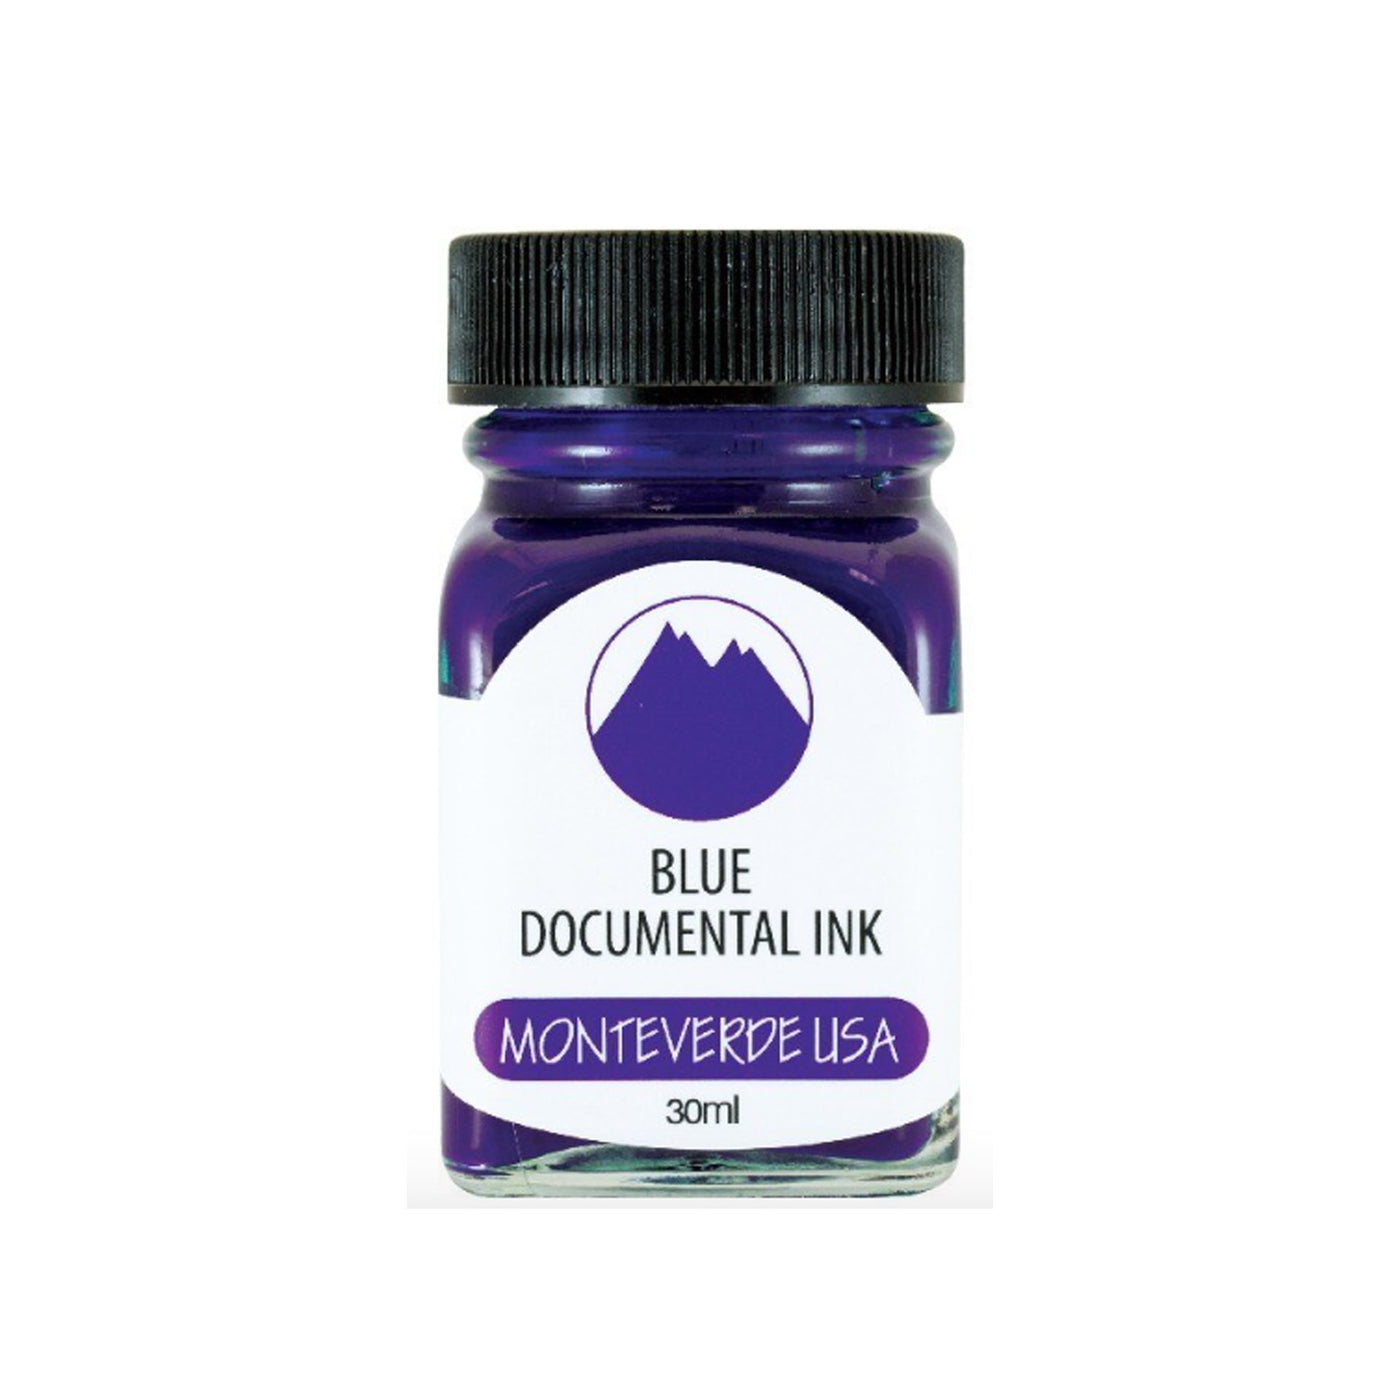 Monteverde Permanent Documental Ink Bottle, Blue - 30ml 1